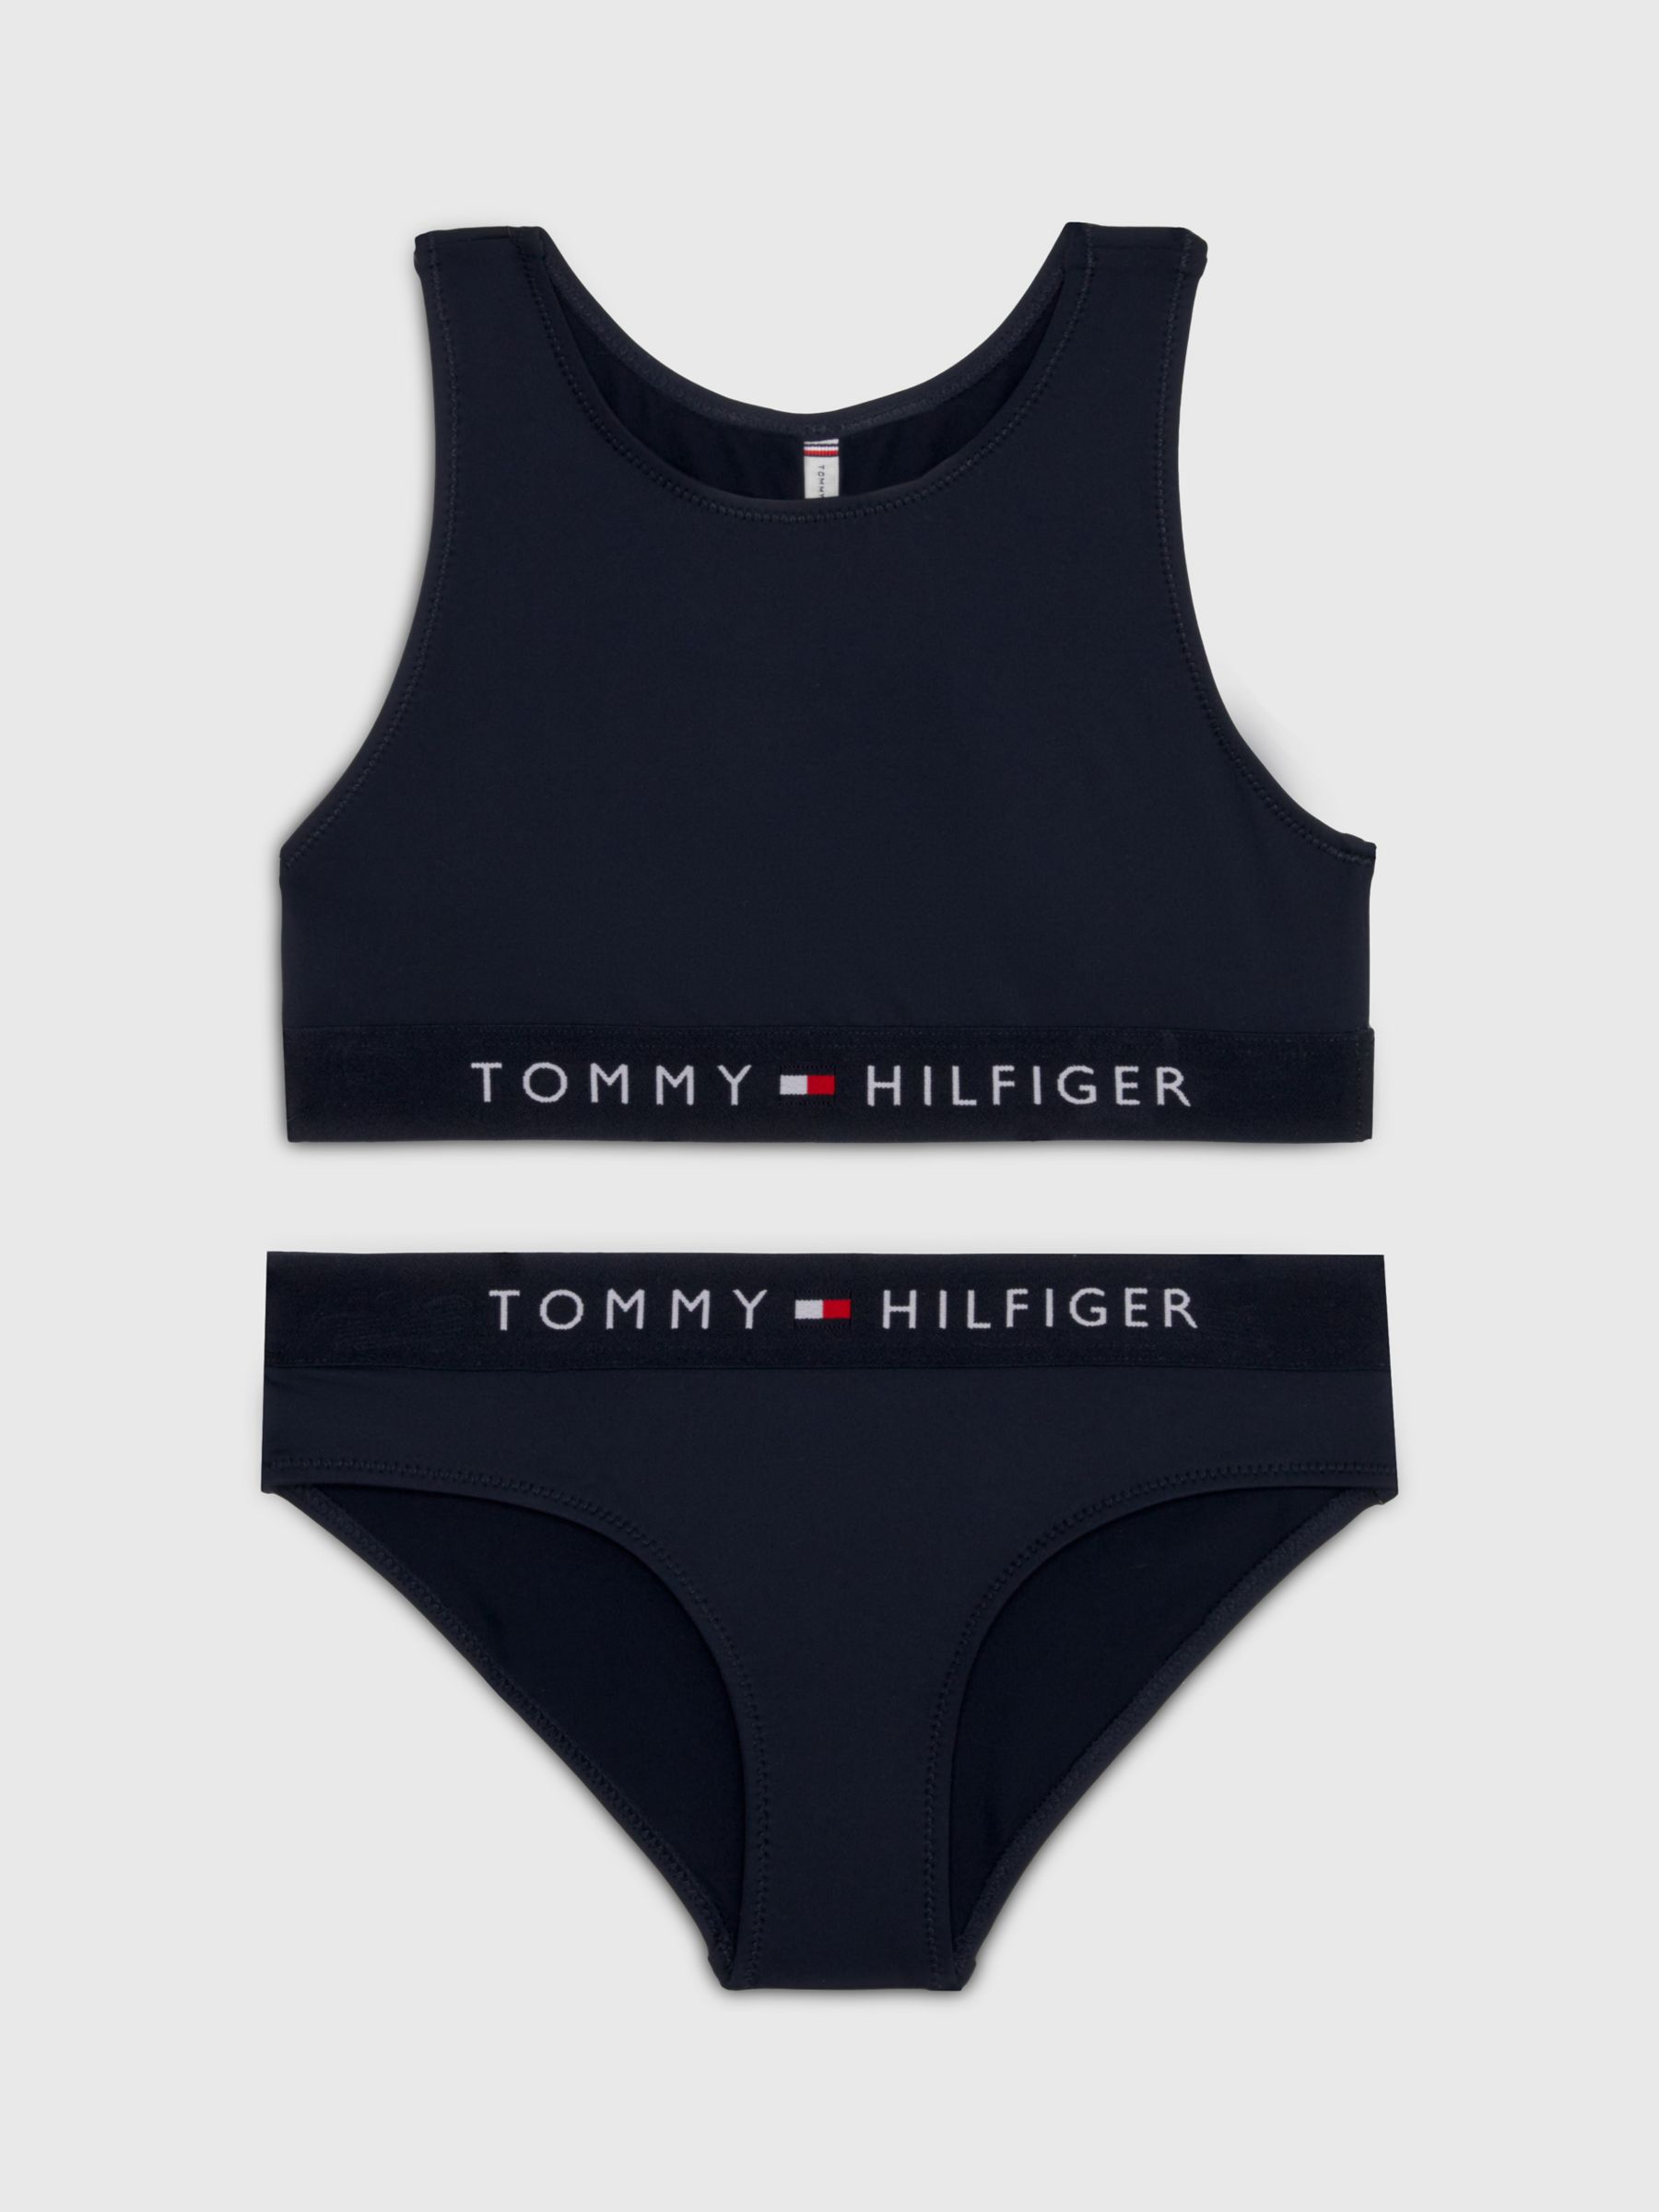 Buy Tommy Hilfiger Kids' Bikini Set, Desert Sky Online at johnlewis.com